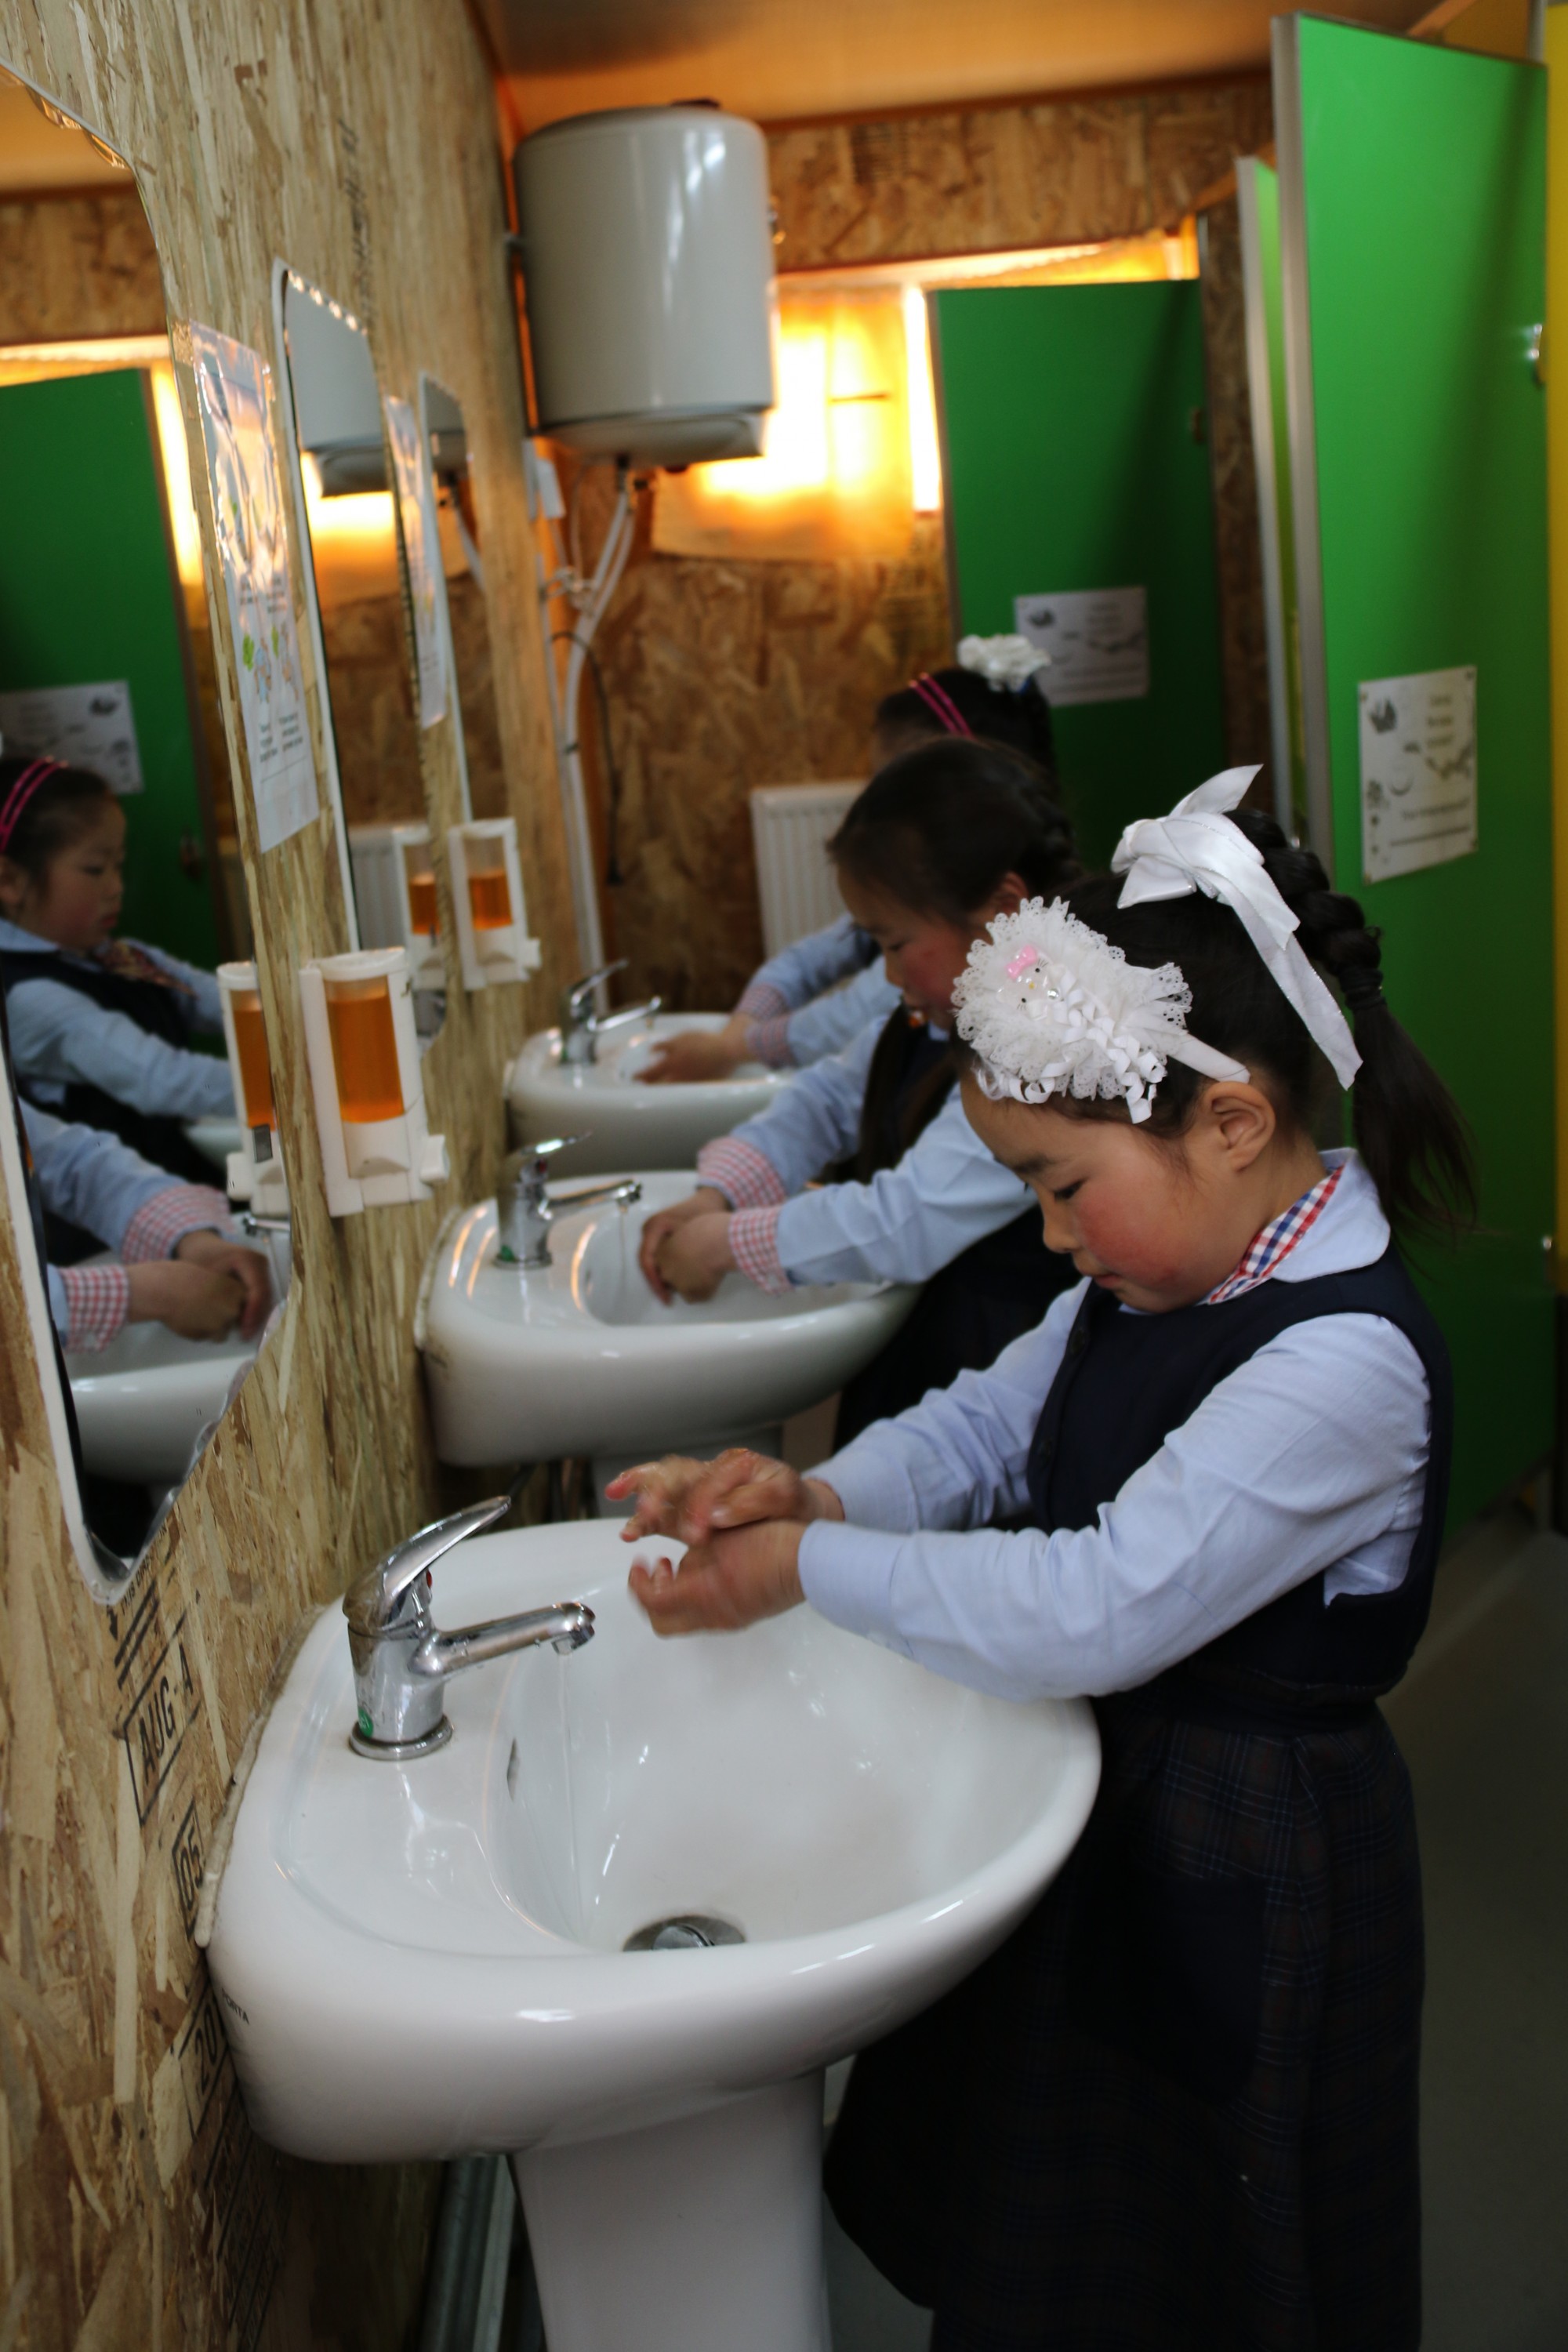 Хөвсгөл аймагт НҮБ-ын Хүүхдийн сангийн контейнер ашиглаж байгуулсан ариун цэврийн өрөөнд сурагчид гараа угааж байгаа нь